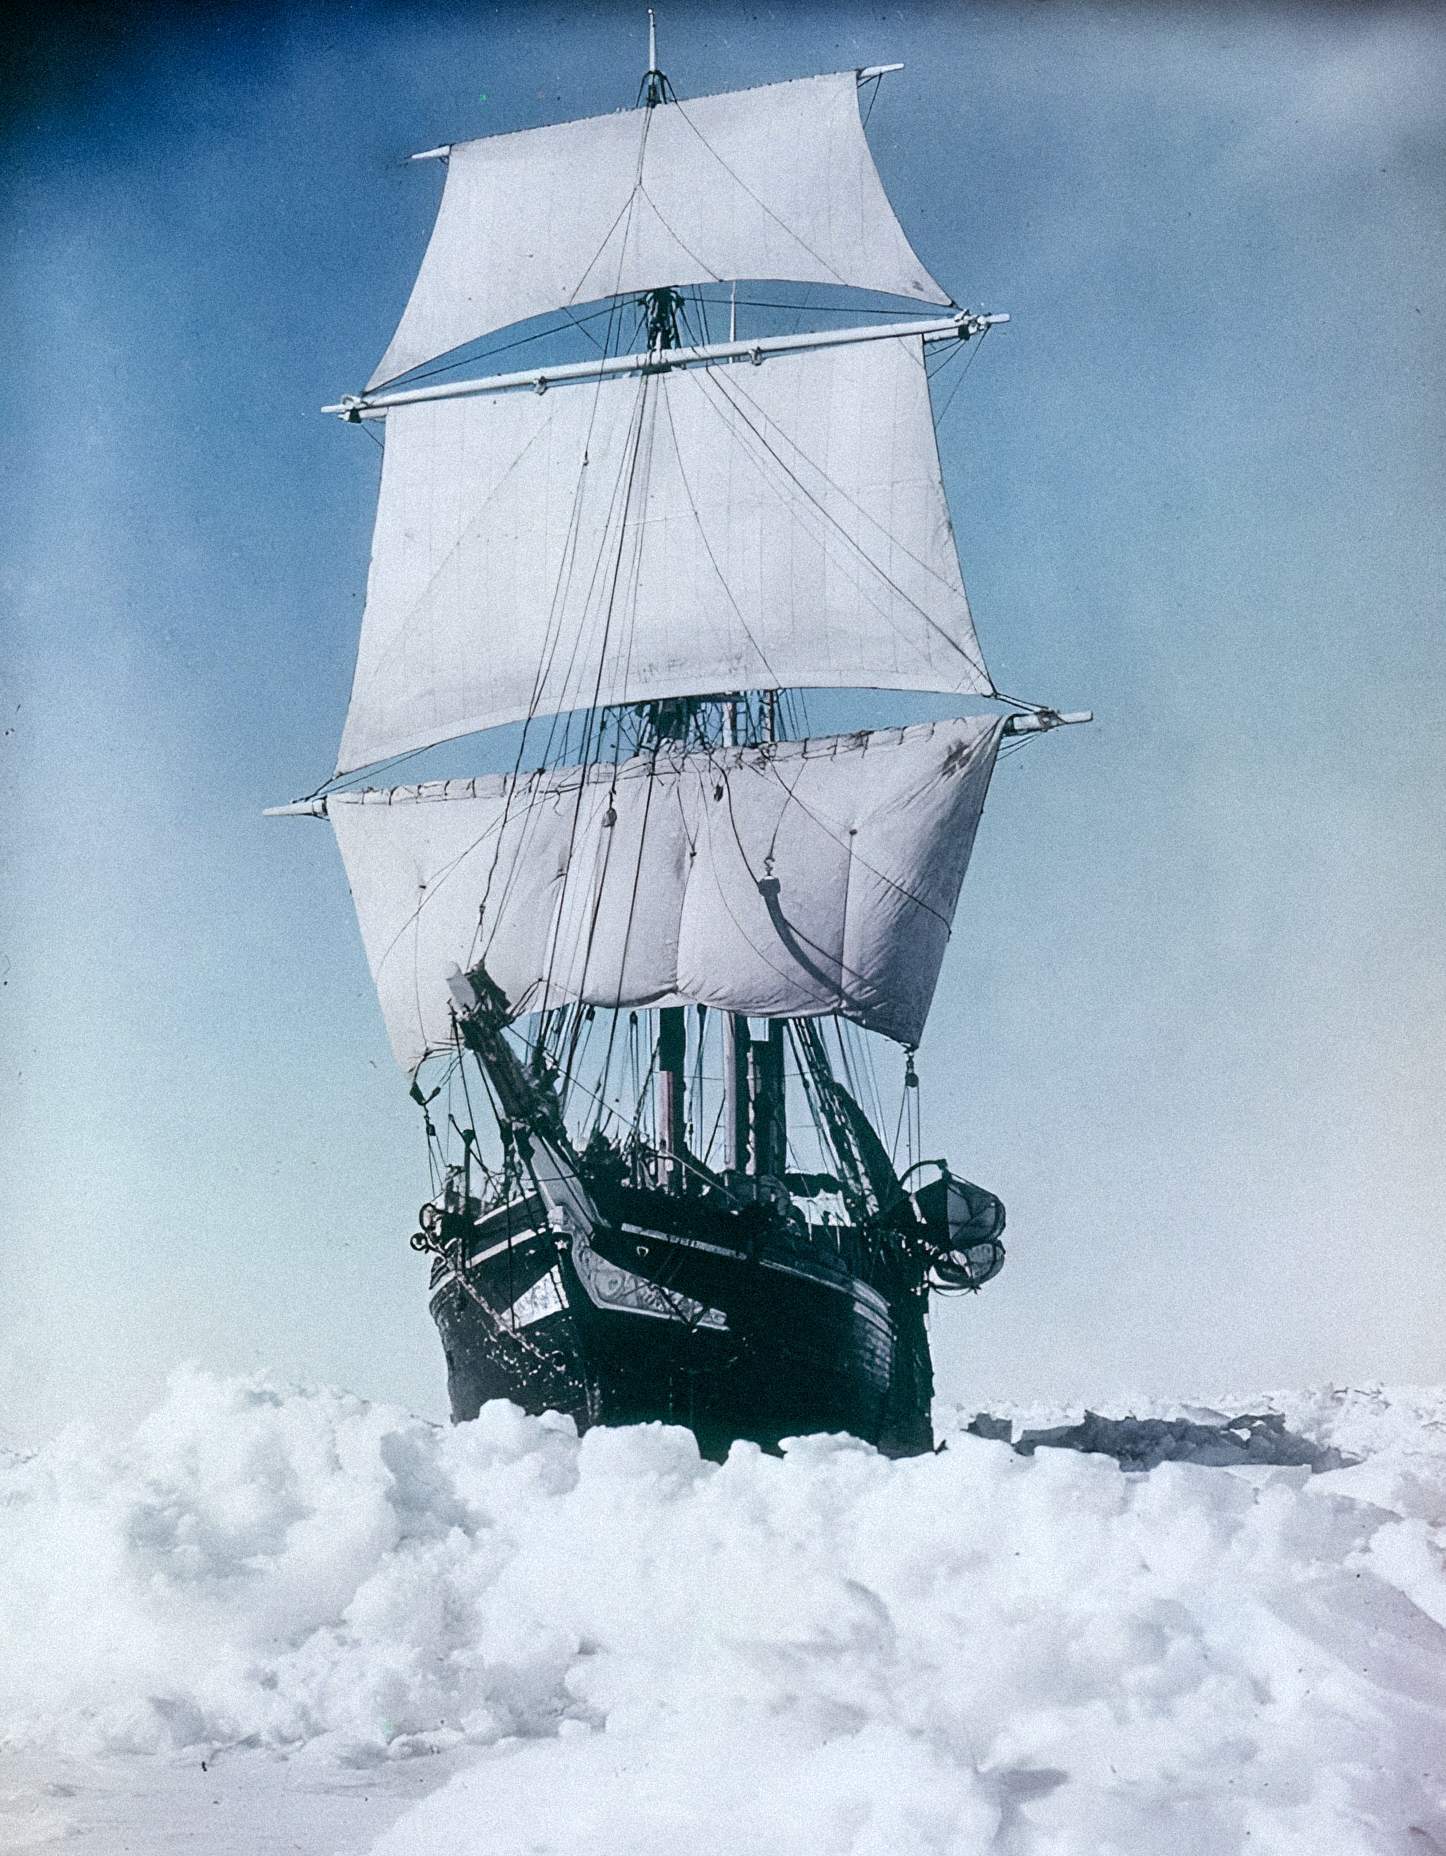 Udholdenhed under damp og sejl forsøger at bryde gennem pakis i Weddellhavet på den kejserlige transantarktiske ekspedition, 1915, af Frank Hurley.